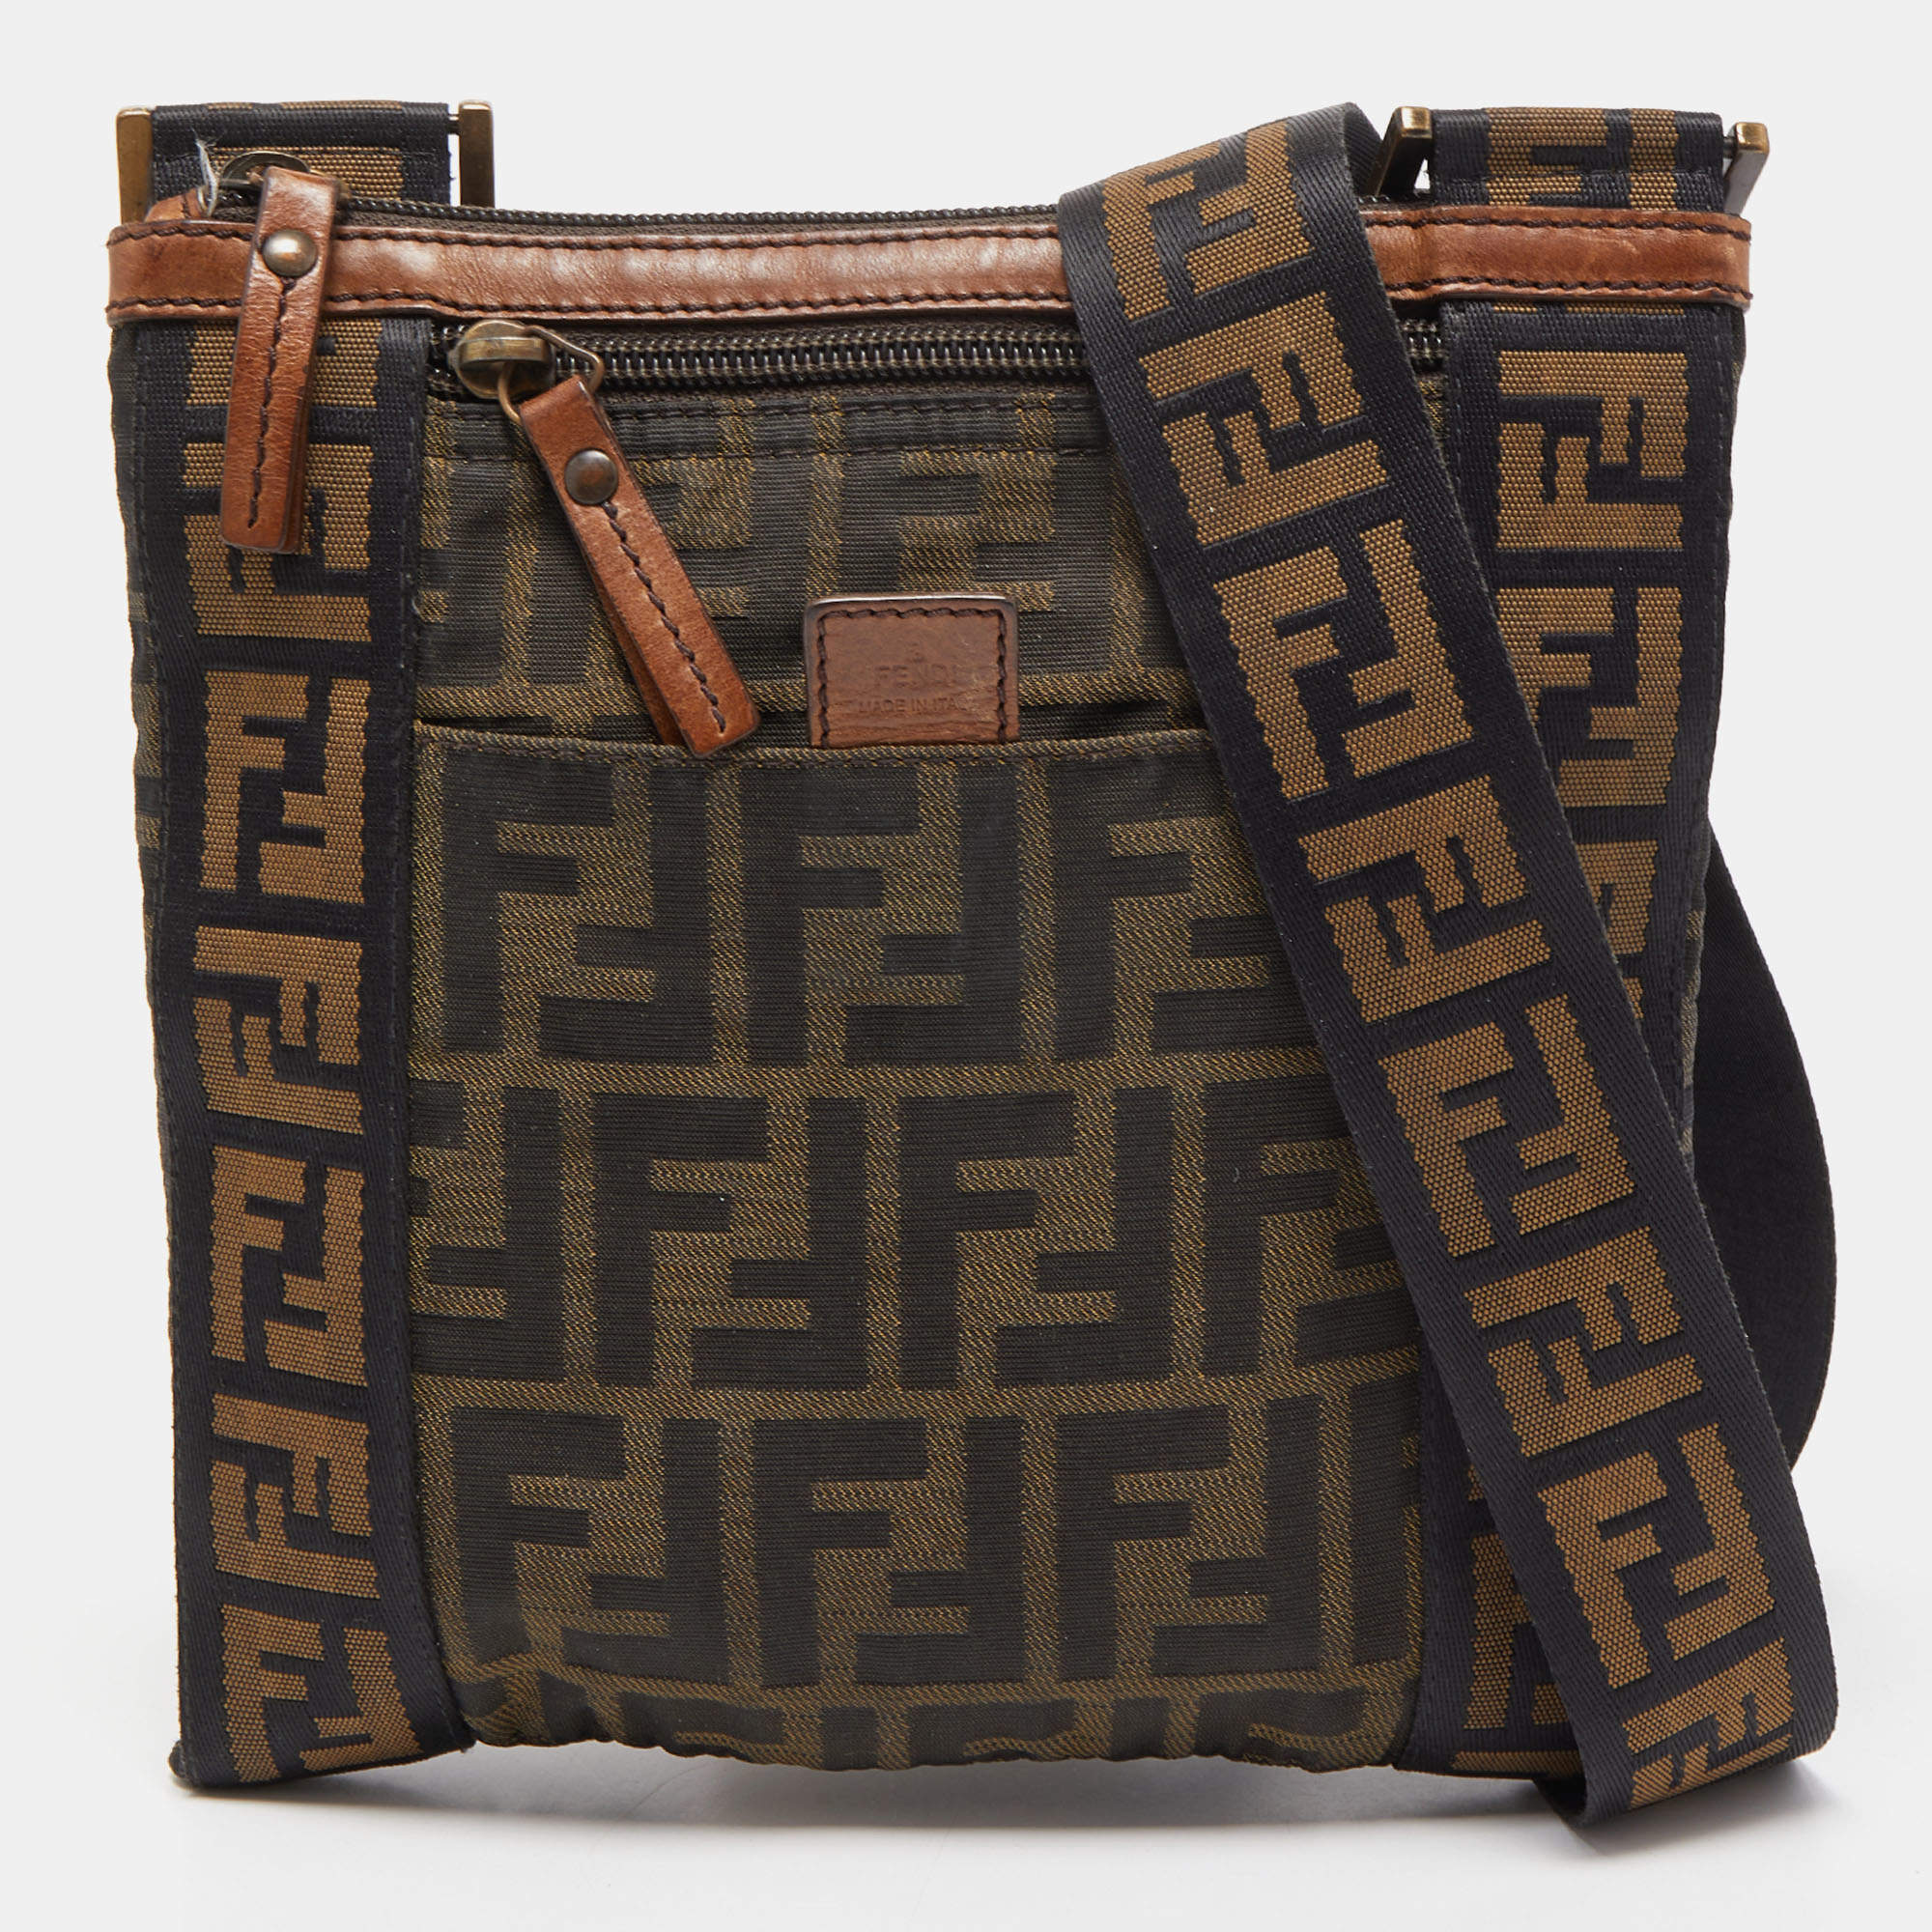 Fendi Men's Messenger Bags for sale